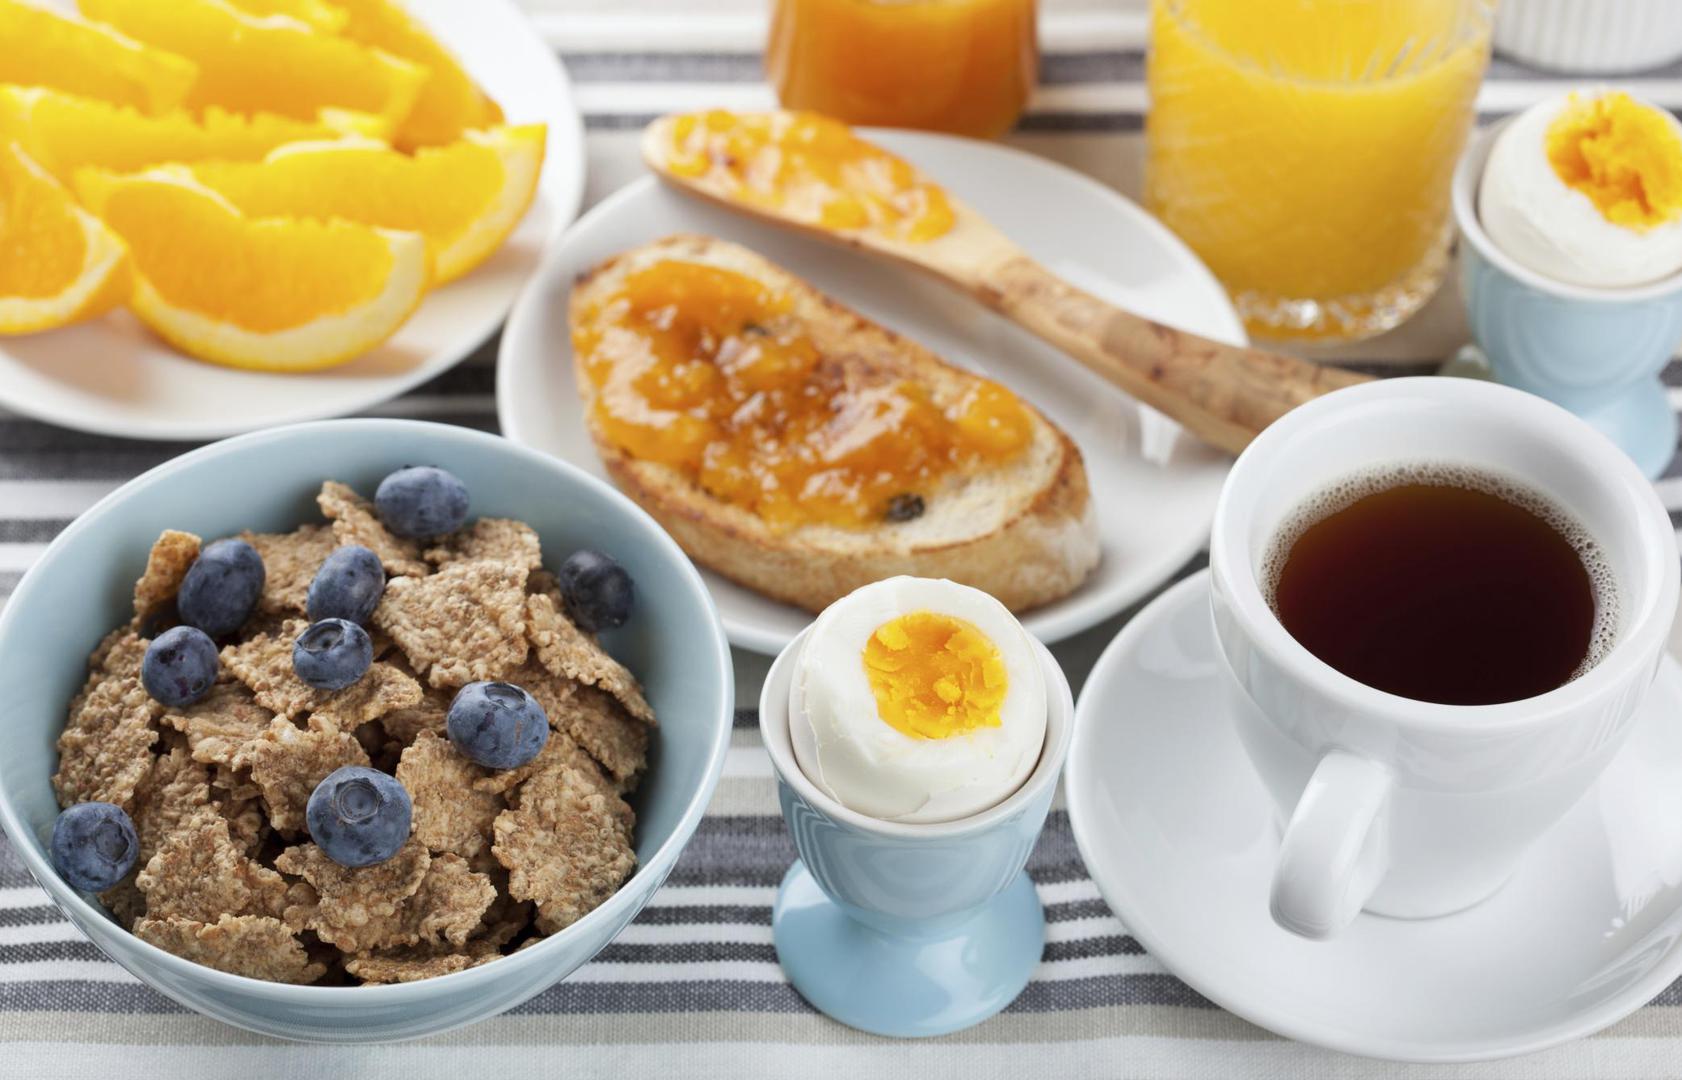 5. Preskakanje doručka - Nije teško preskočiti doručak kad imate užurbani raspored. Ali doručak je s razlogom najvažniji obrok. Osim toga, imate čitav dan da potrošite kalorije koje ste ujutro unijeli. 